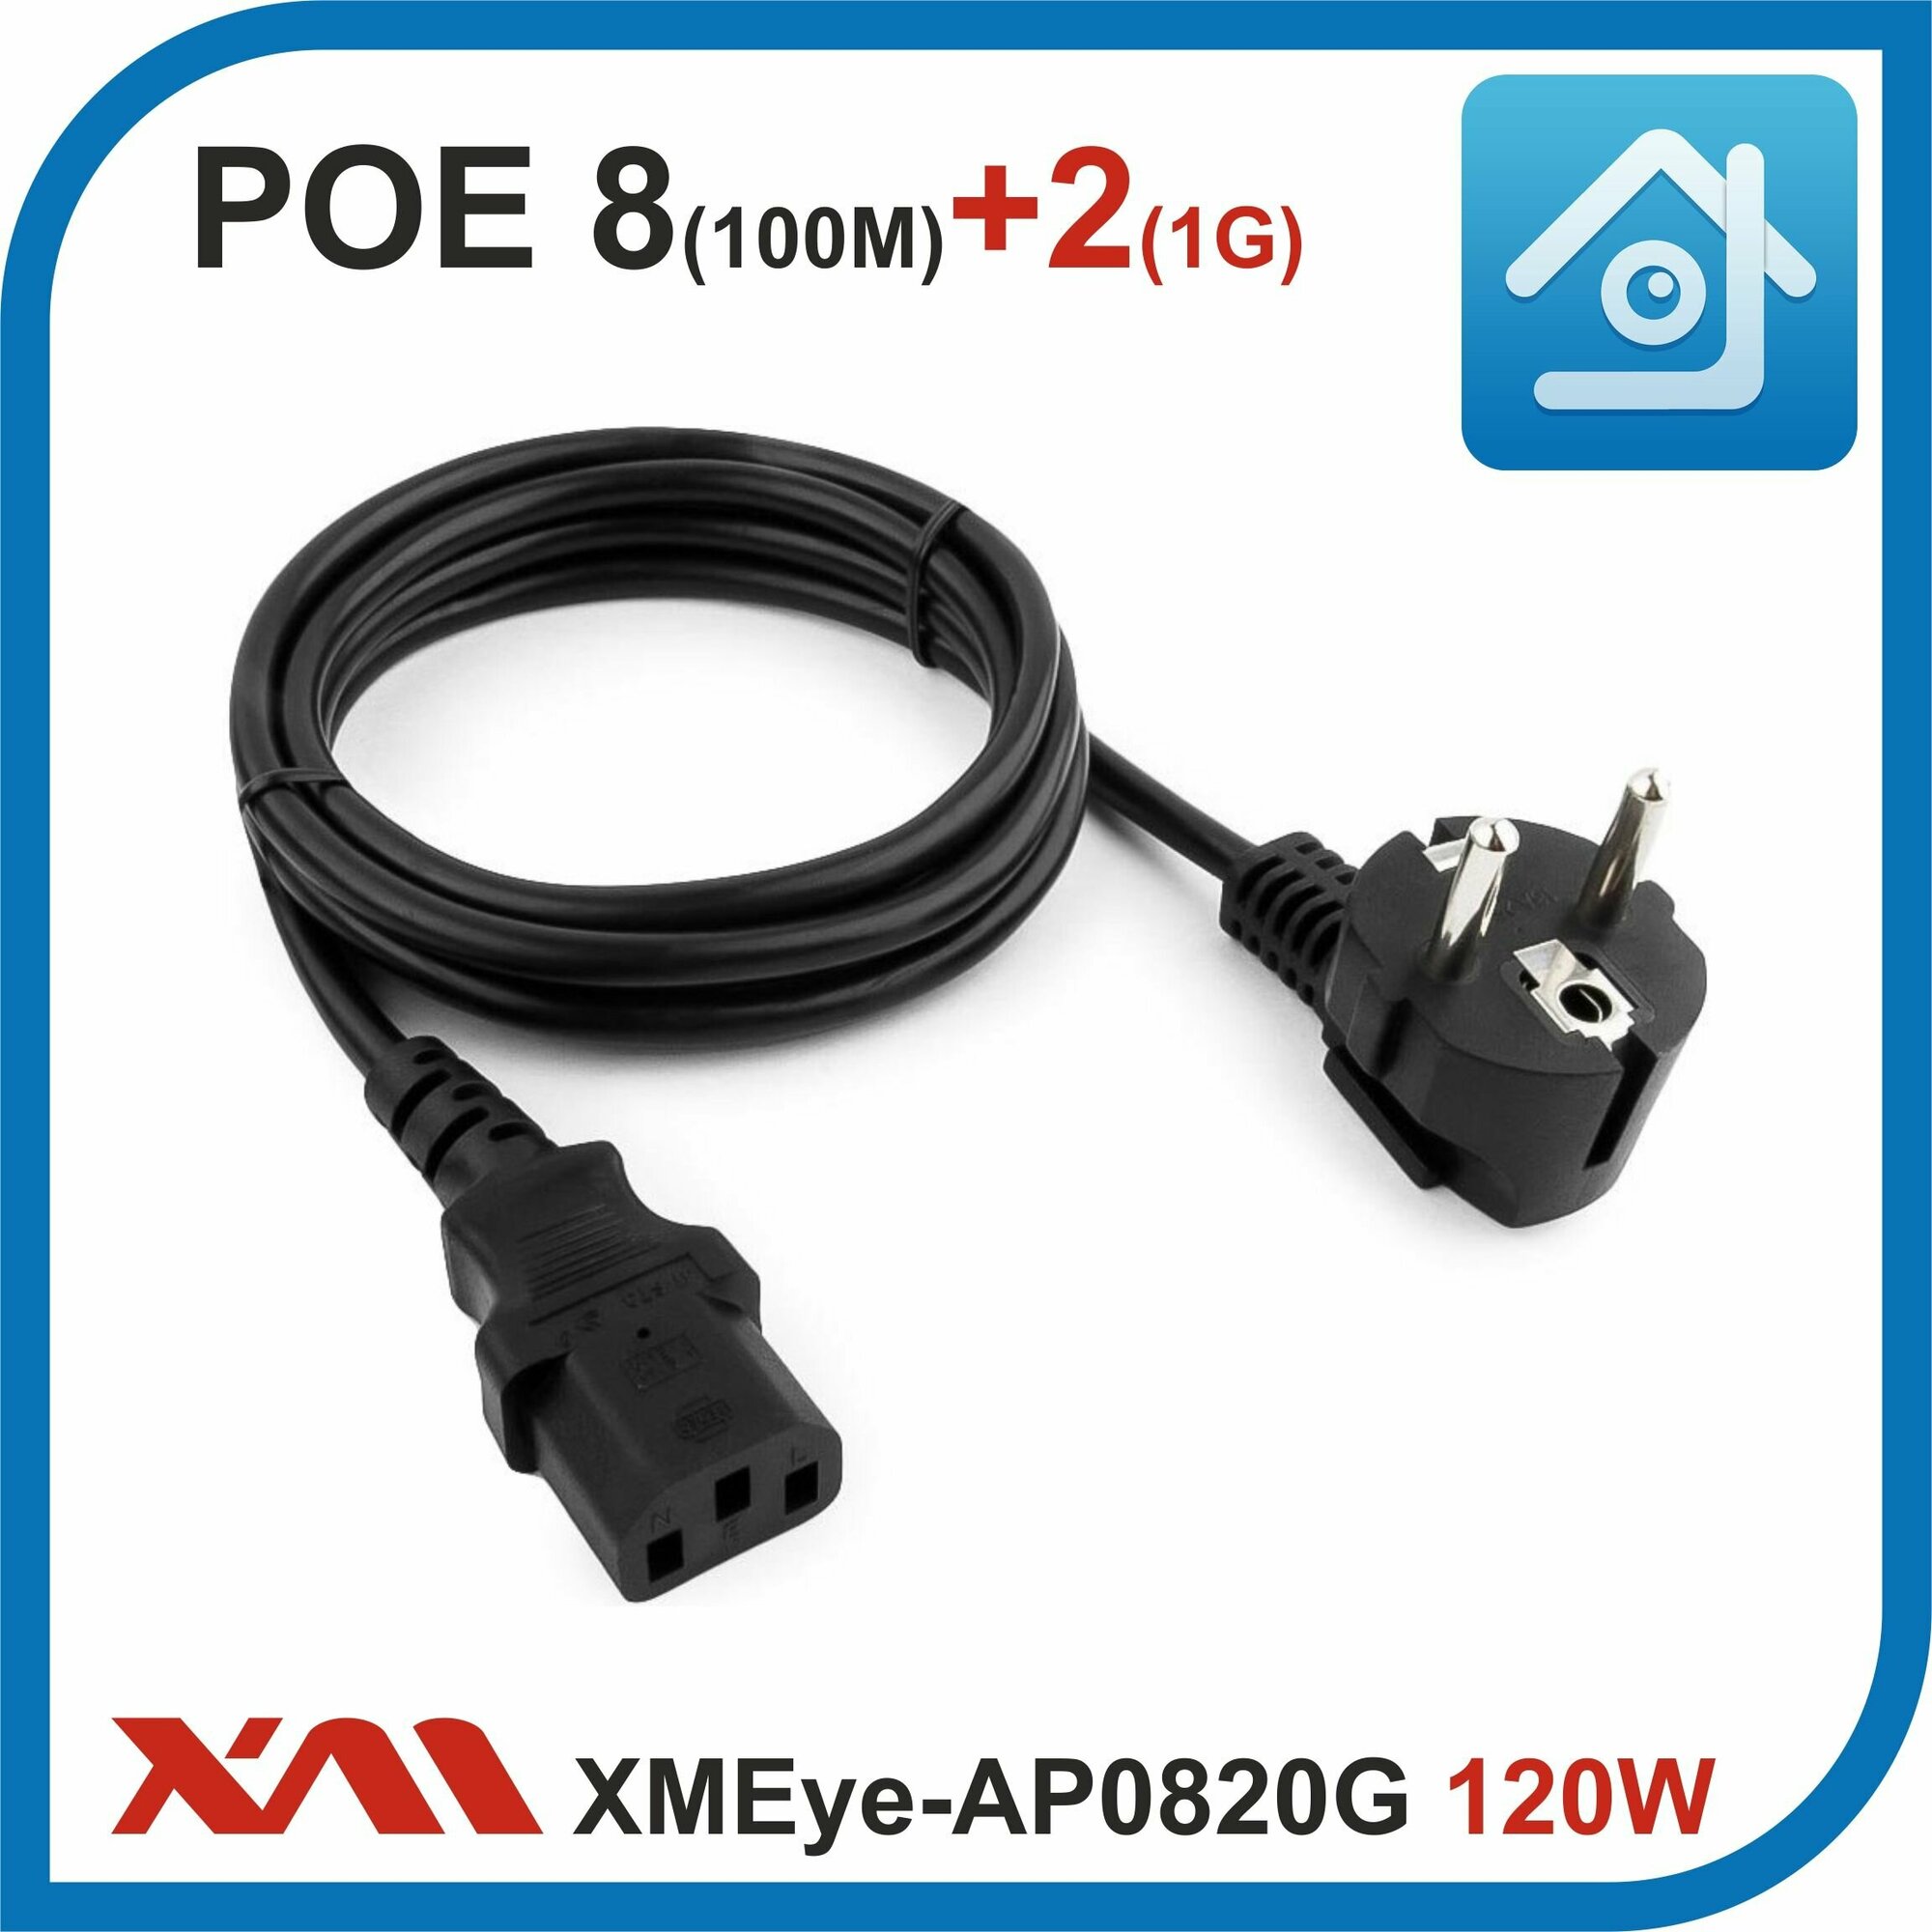 XMEye-AP0820G 120W Коммутатор POE на 8 портов (10/100M) + 2 uplink GIGABIT (1000M)